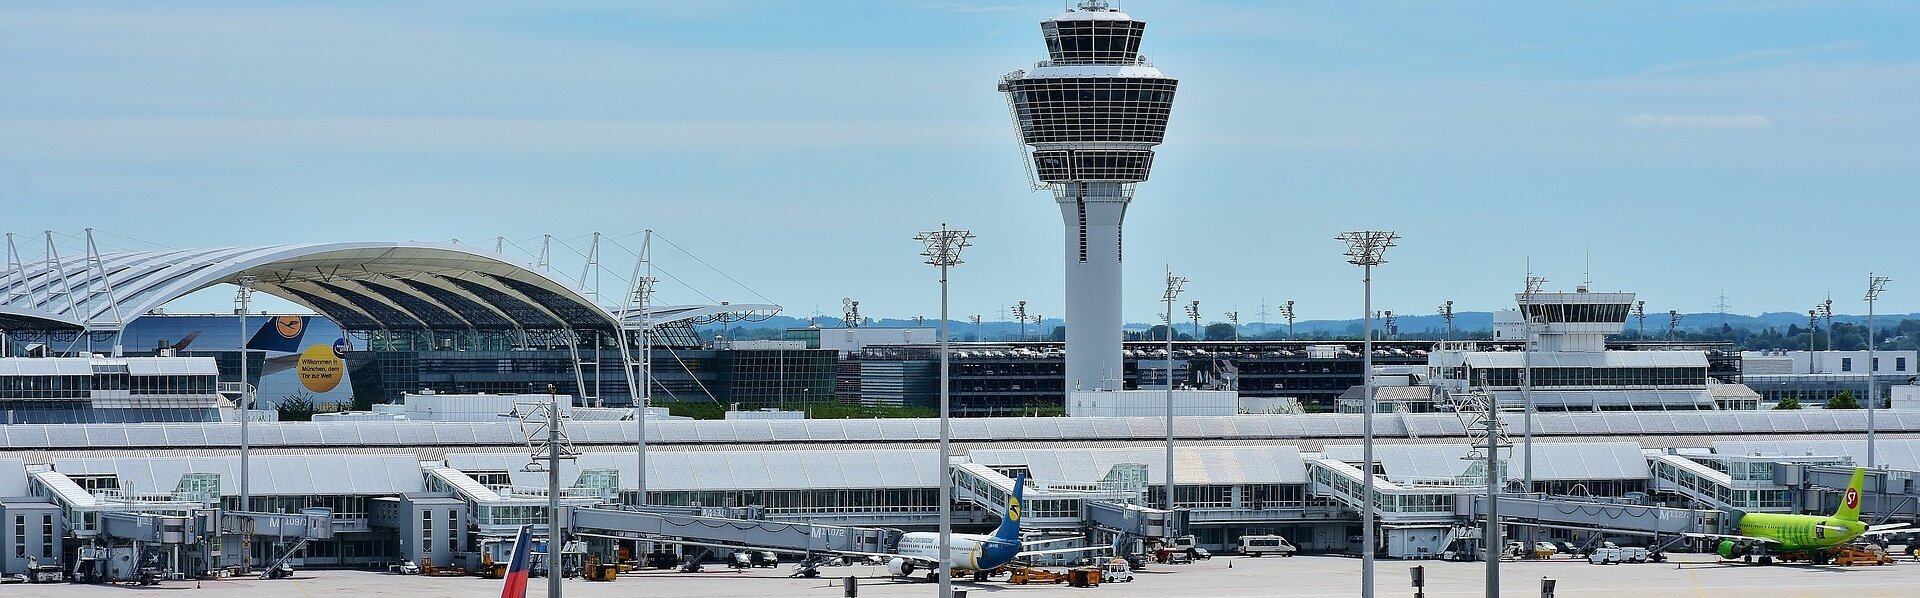 Das Bild zeigt den Flughafen München